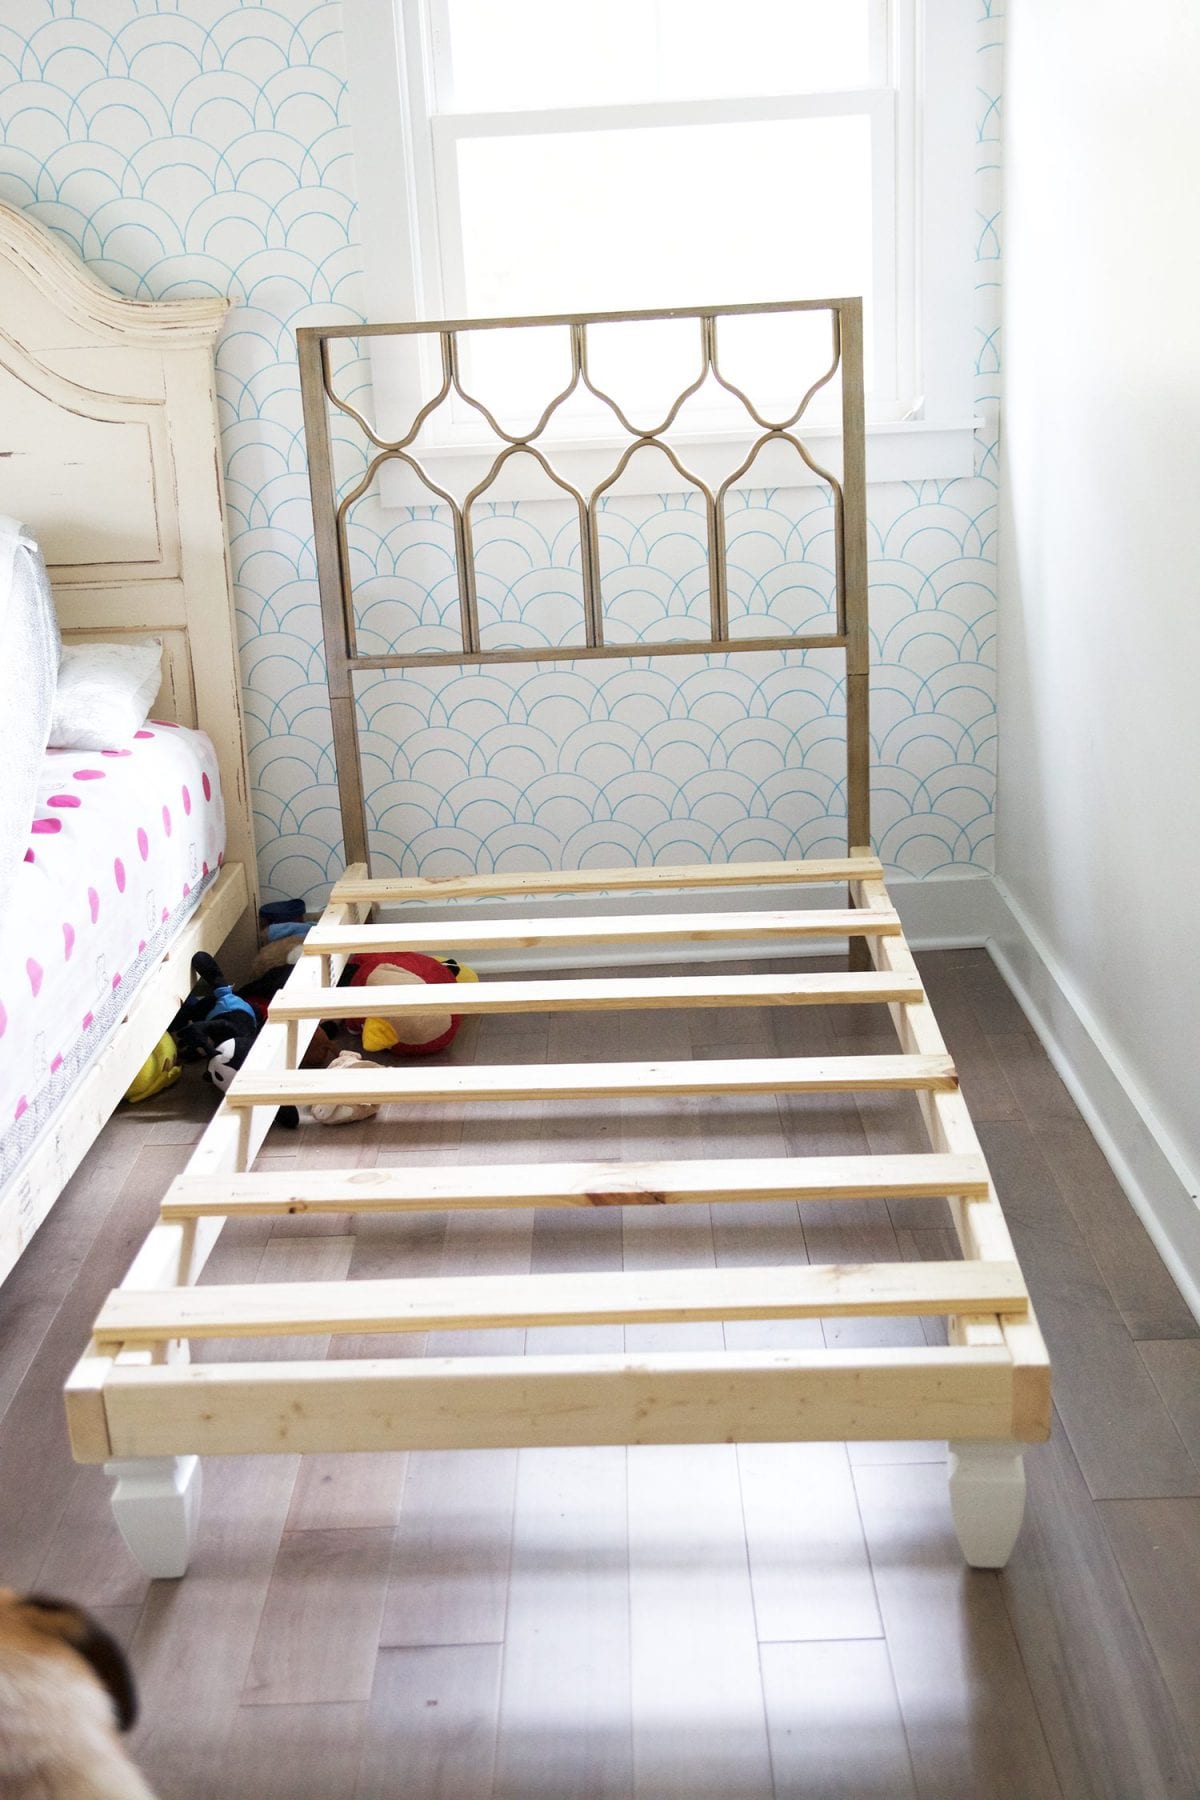 Easy DIY Beds